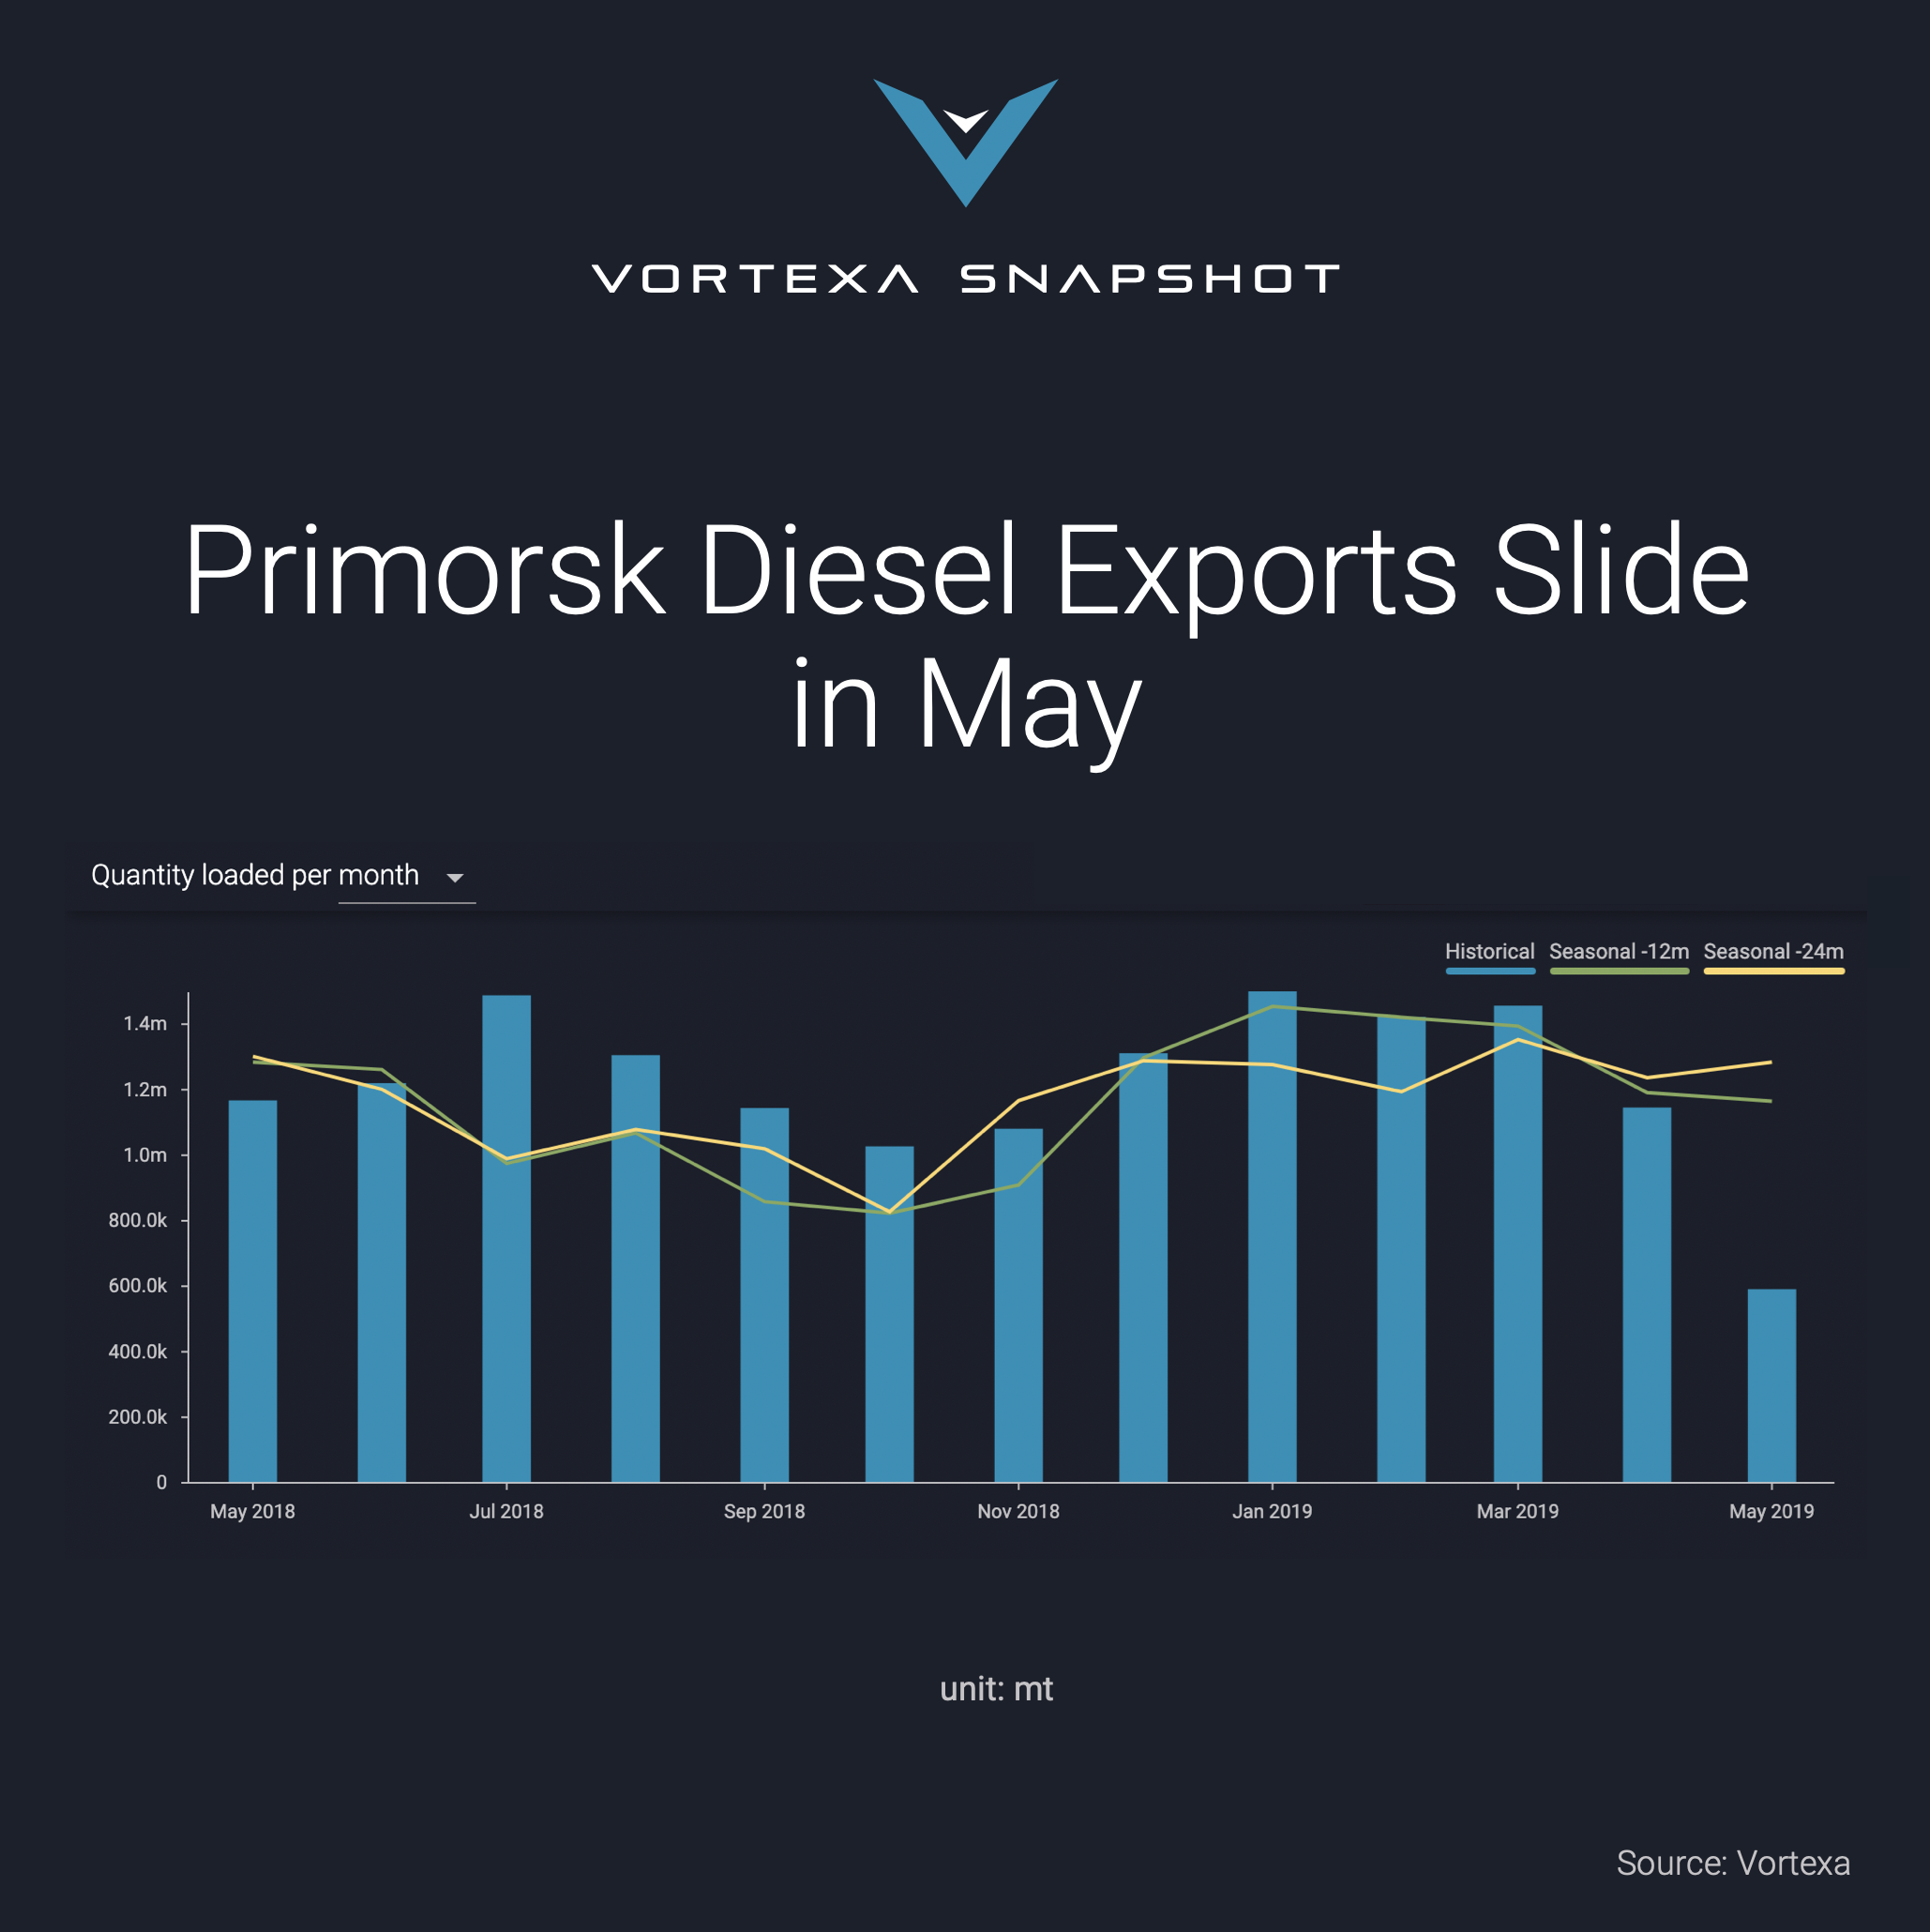 Primorsk Diesel Exports